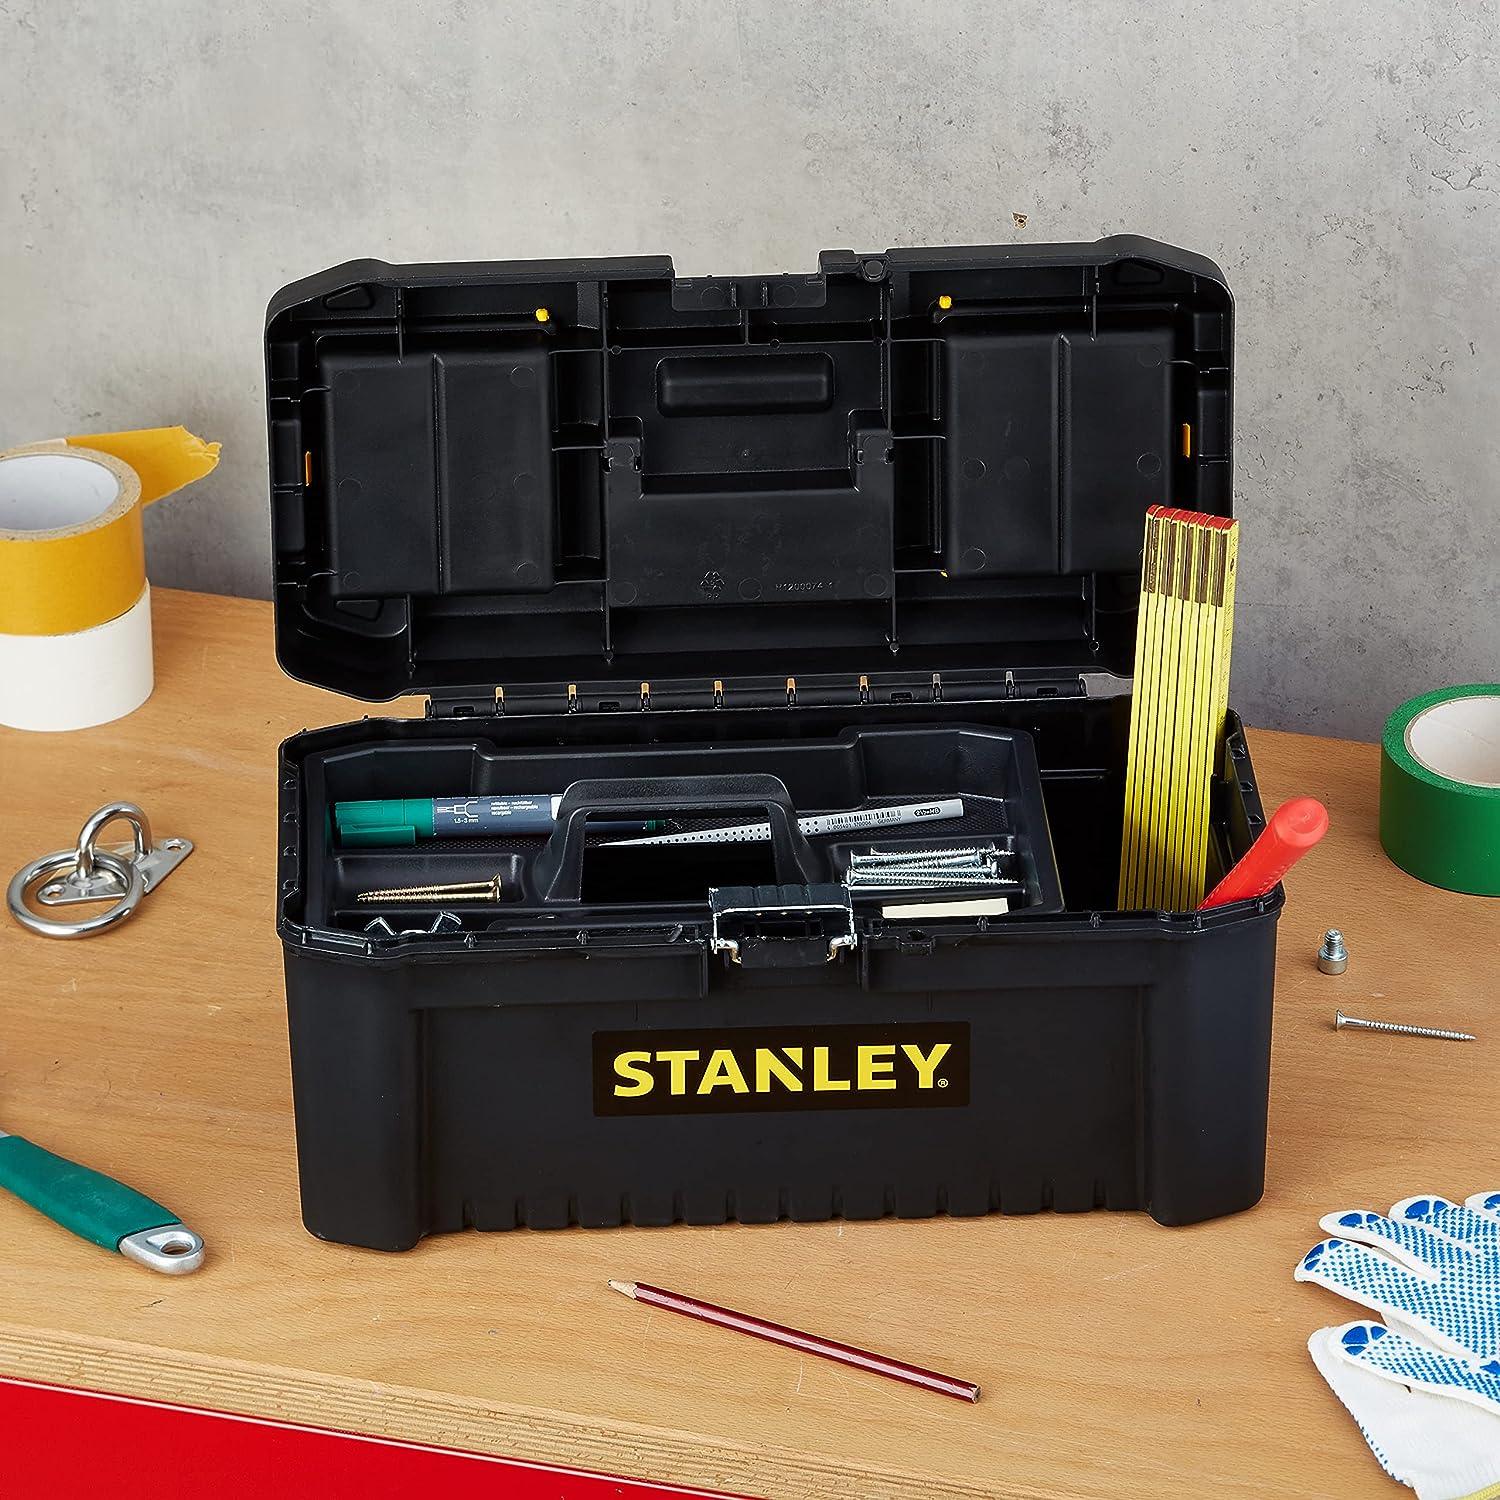 STANLEY STST1-75521 Boîte à outils classic line 50 cm